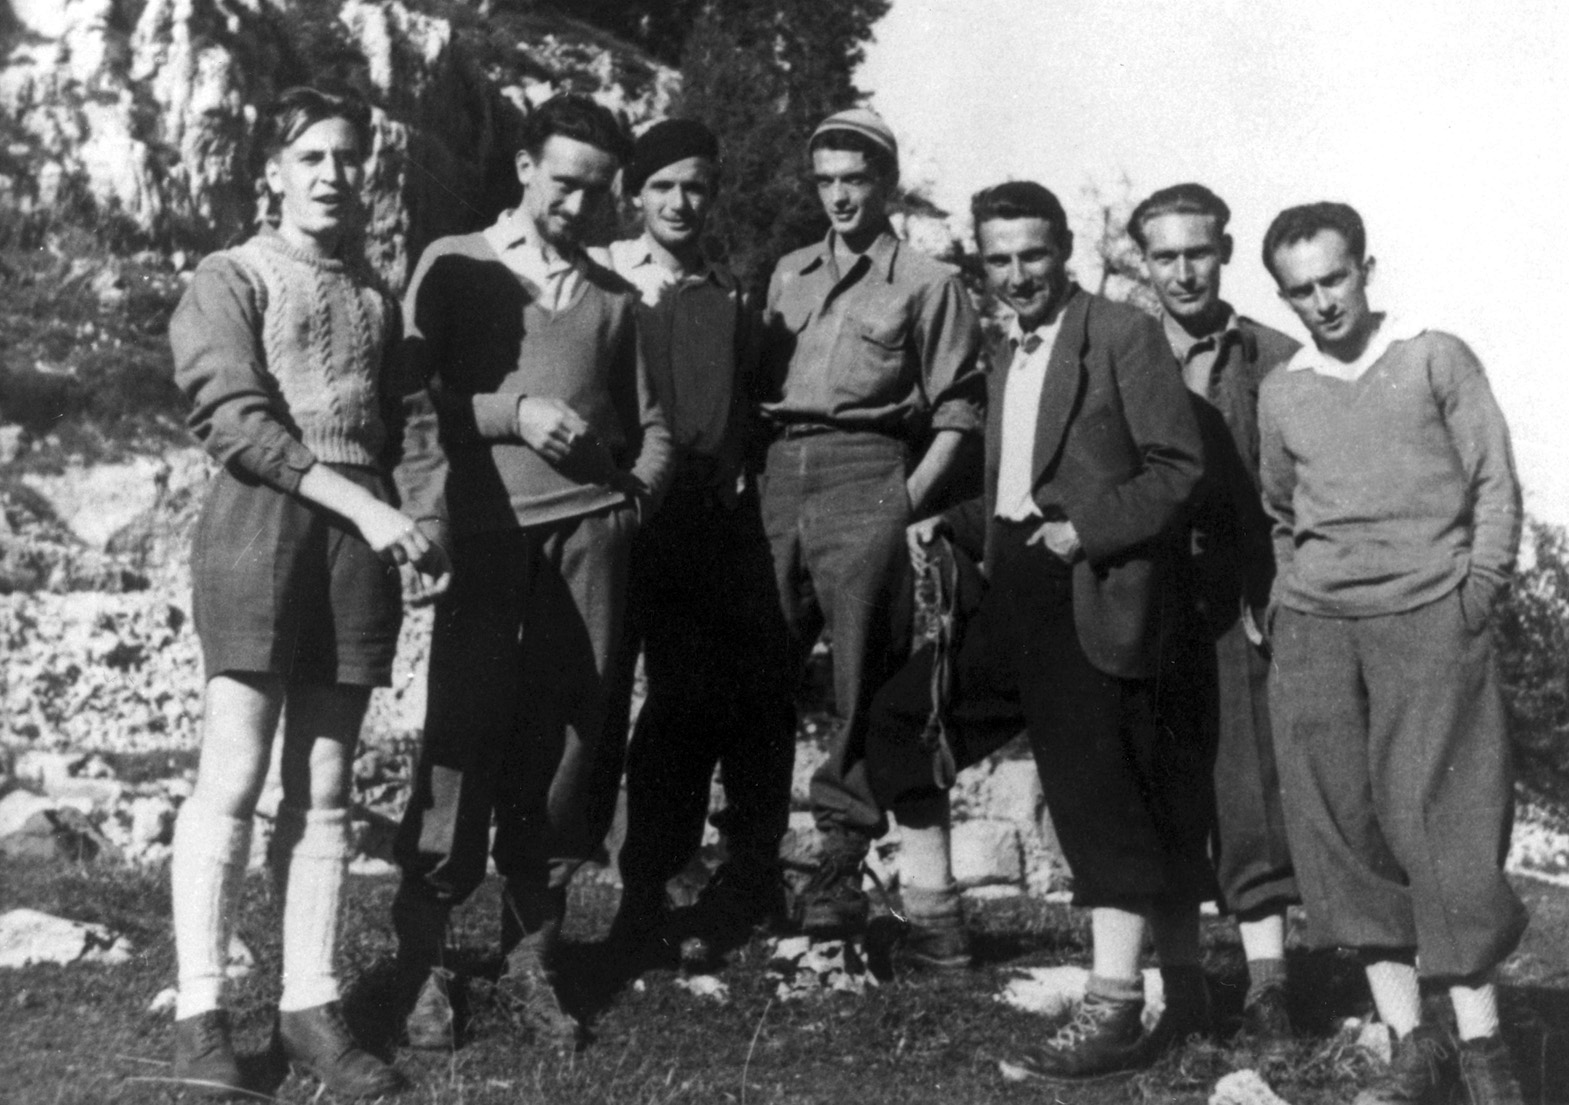 Il gruppo partigiano de I piccoli maestri ad Asiago nel 1944. Il quarto da sinistra è Luigi Meneghello. Libri per il 25 aprile